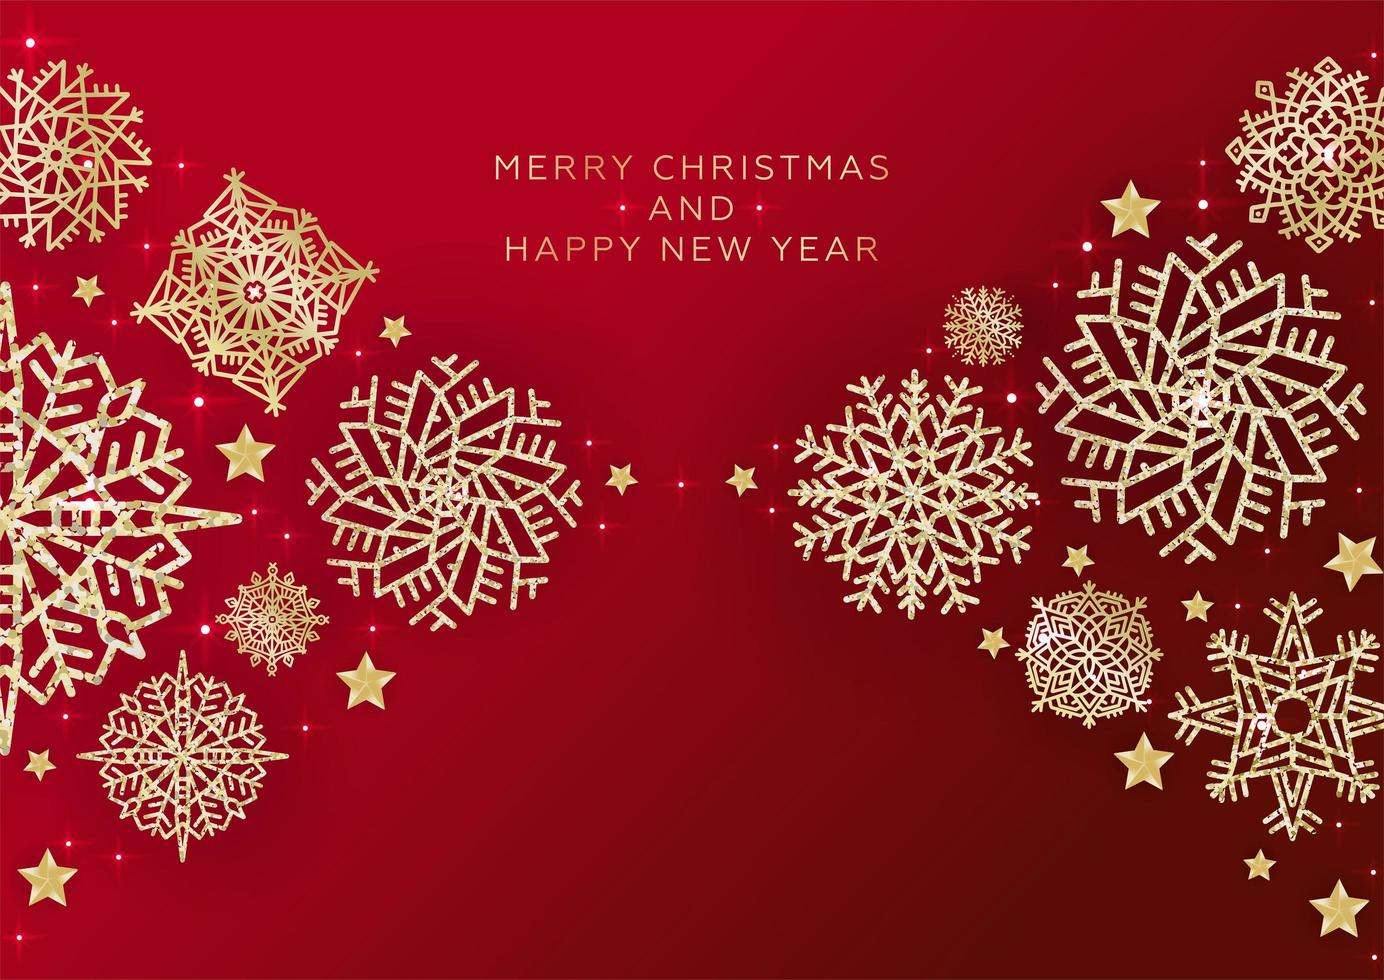 fundo vermelho de natal com borda feita de flocos de neve de glitter dourados recortados. cartão de natal brilhante chique. ilustração vetorial. vetor